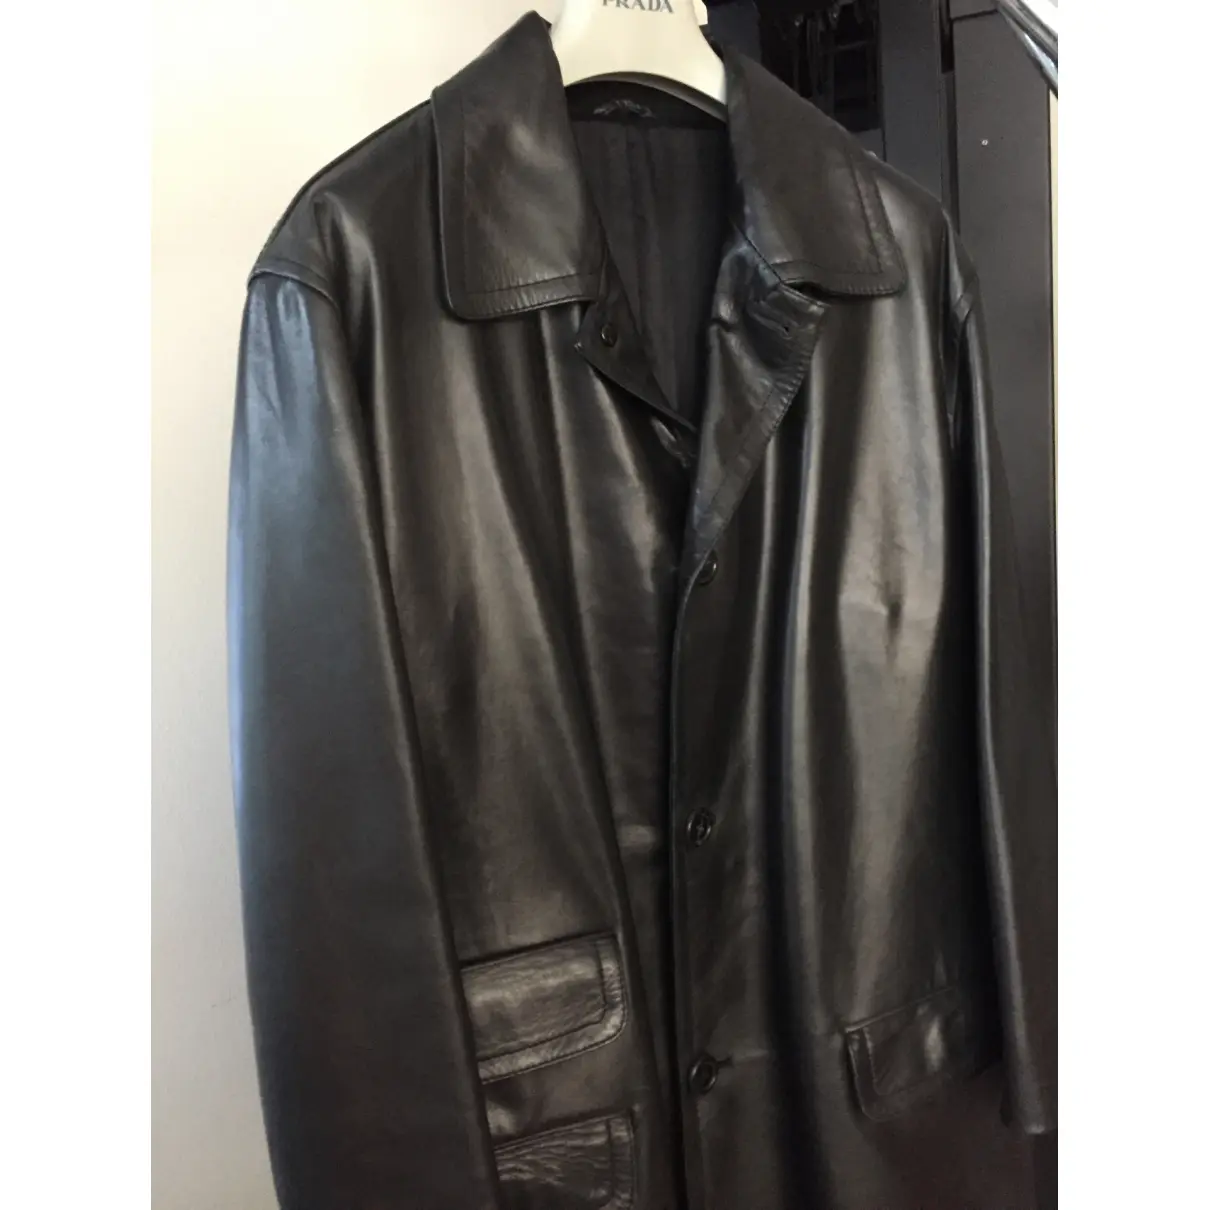 Leather coat Prada